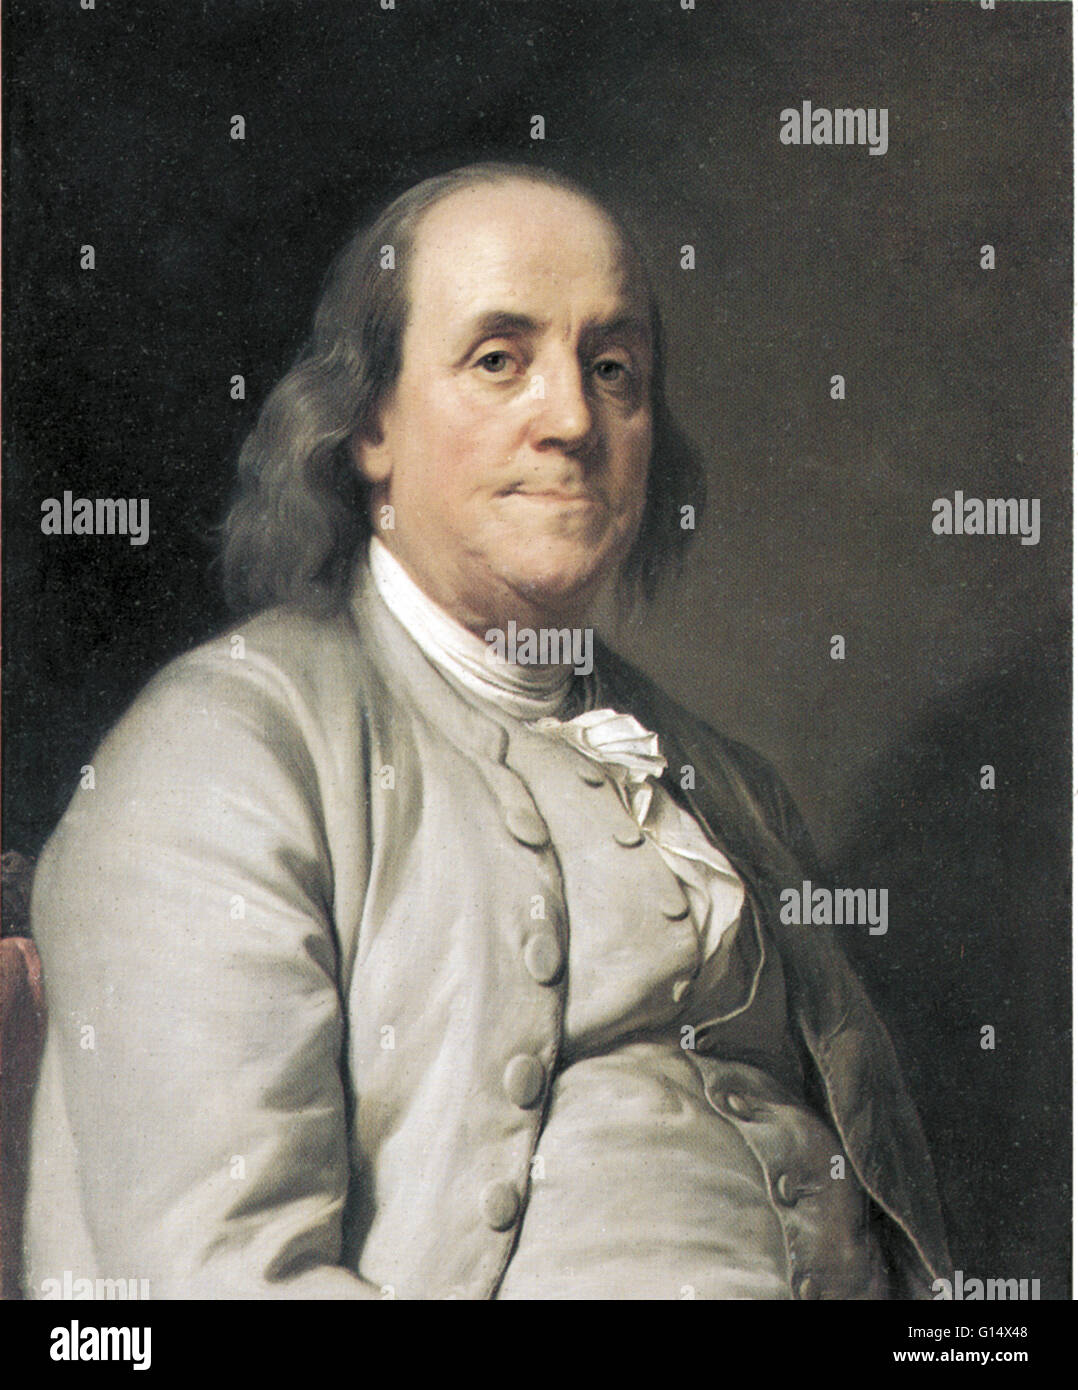 Benjamin Franklin (1706-1790) est l'un des pères fondateurs des États-Unis. Franklin était un auteur, de l'imprimante, le théoricien politique, homme politique, ministre des Postes, scientifique, inventeur, musicien, satiriste, activiste civique, homme d'État et diplomate. Comme scientis Banque D'Images